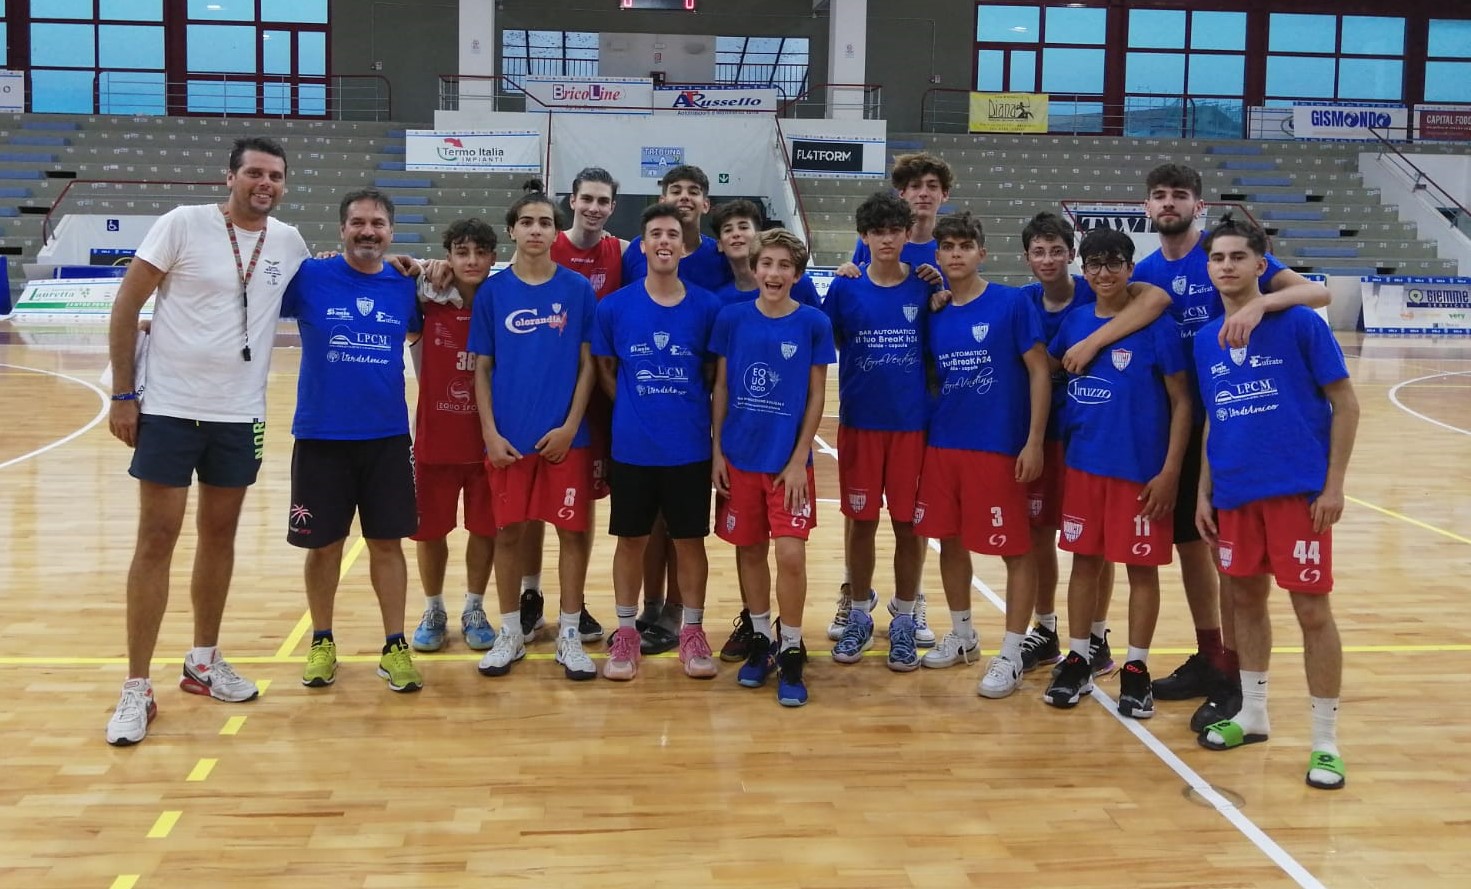 Gela, Basket 3vs3: l’Invicta Caltanissetta qualifica quattro squadre alla fase finale regionale